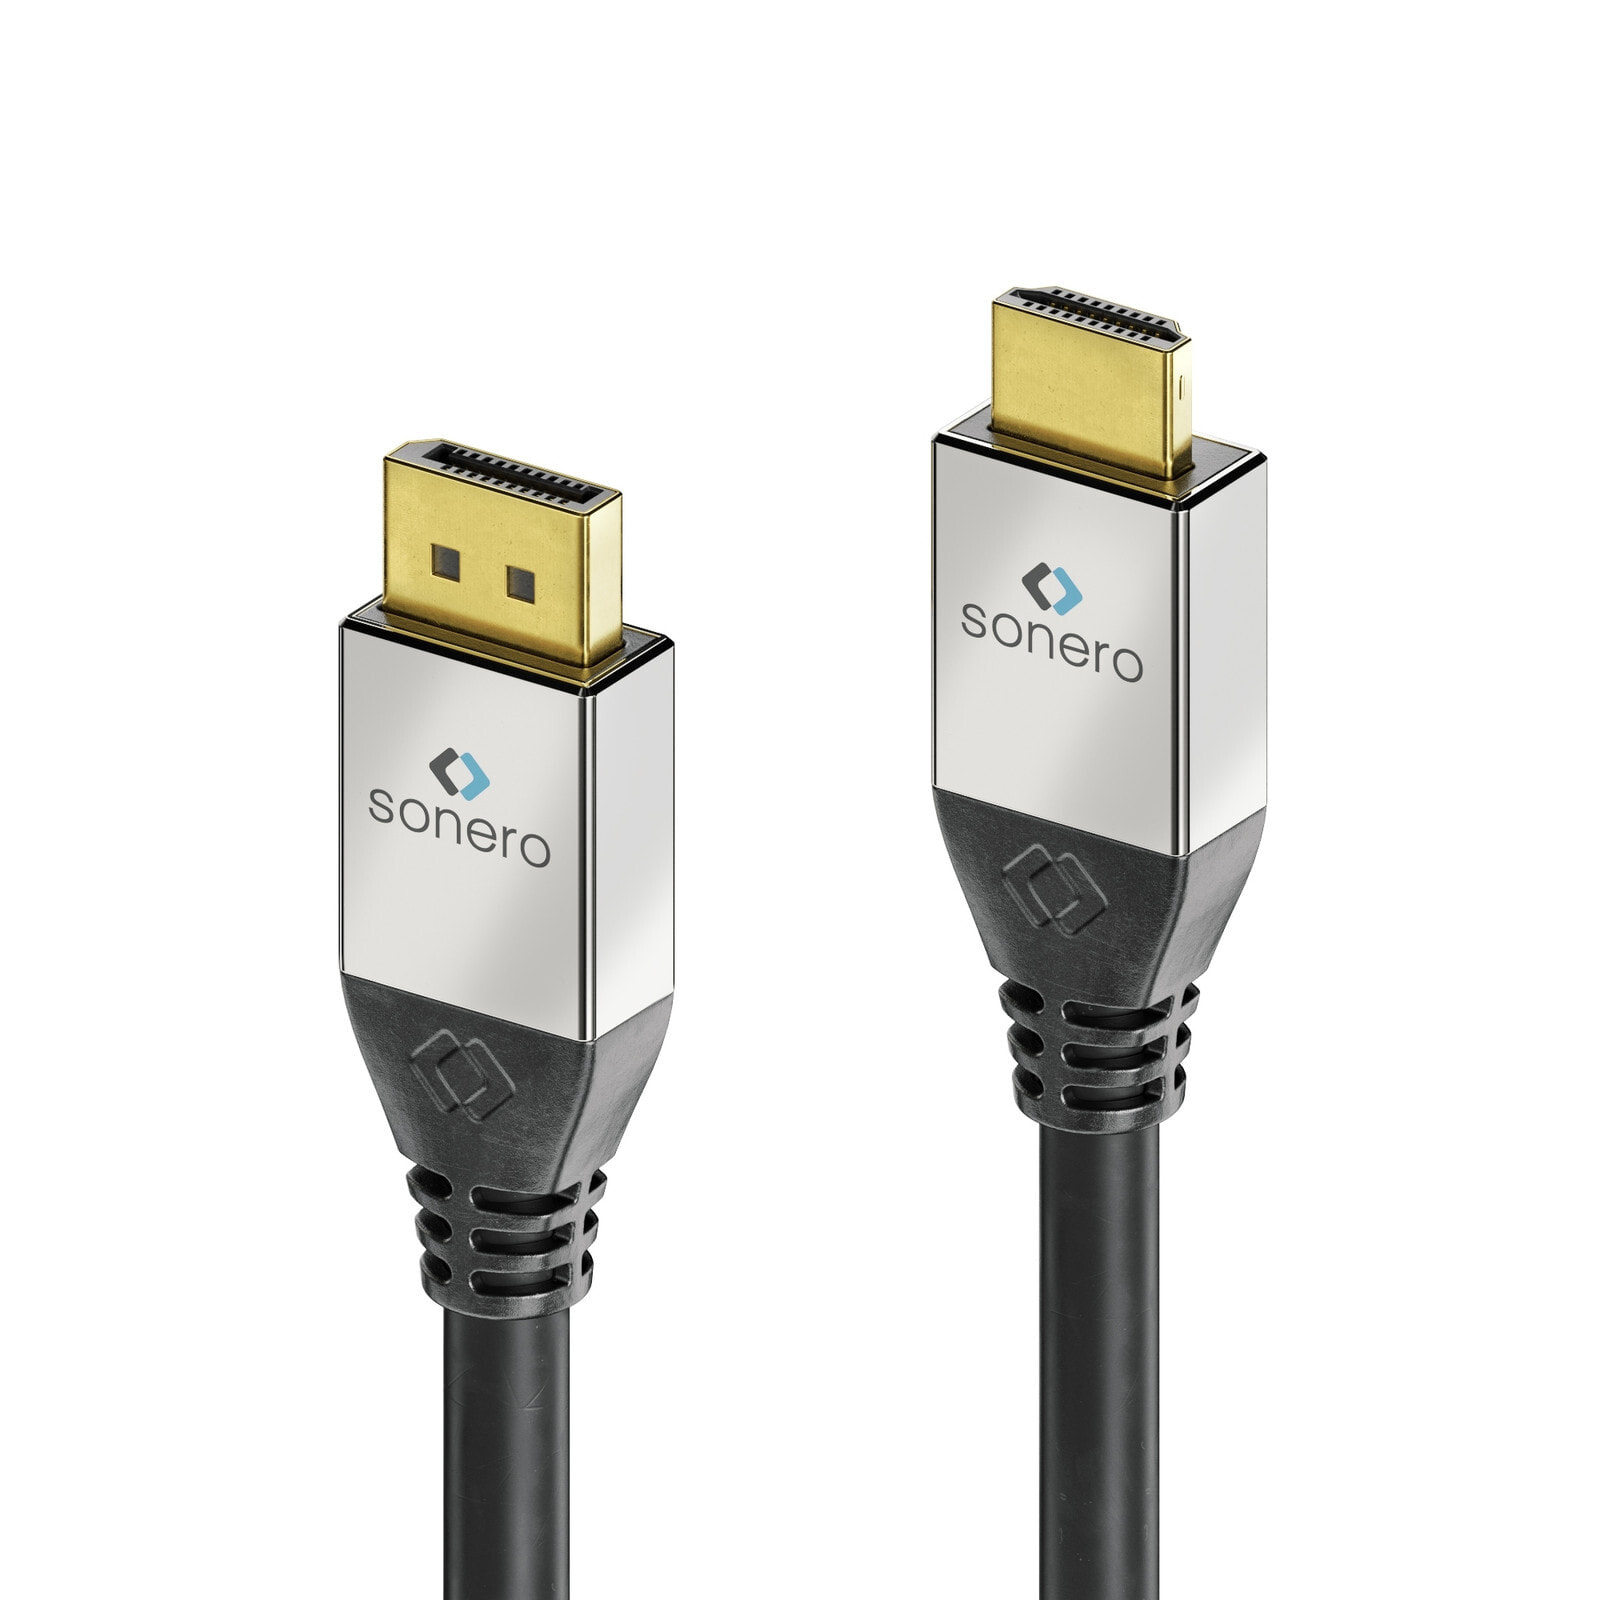 Компьютерный разъем или переходник PureLink GmbH sonero DisplayPort to HDMI Cable 5.0m. Cable length: 5 m, Connector 1: DisplayPort, Connector 2: HDMI. Cable diameter: 7.3 mm